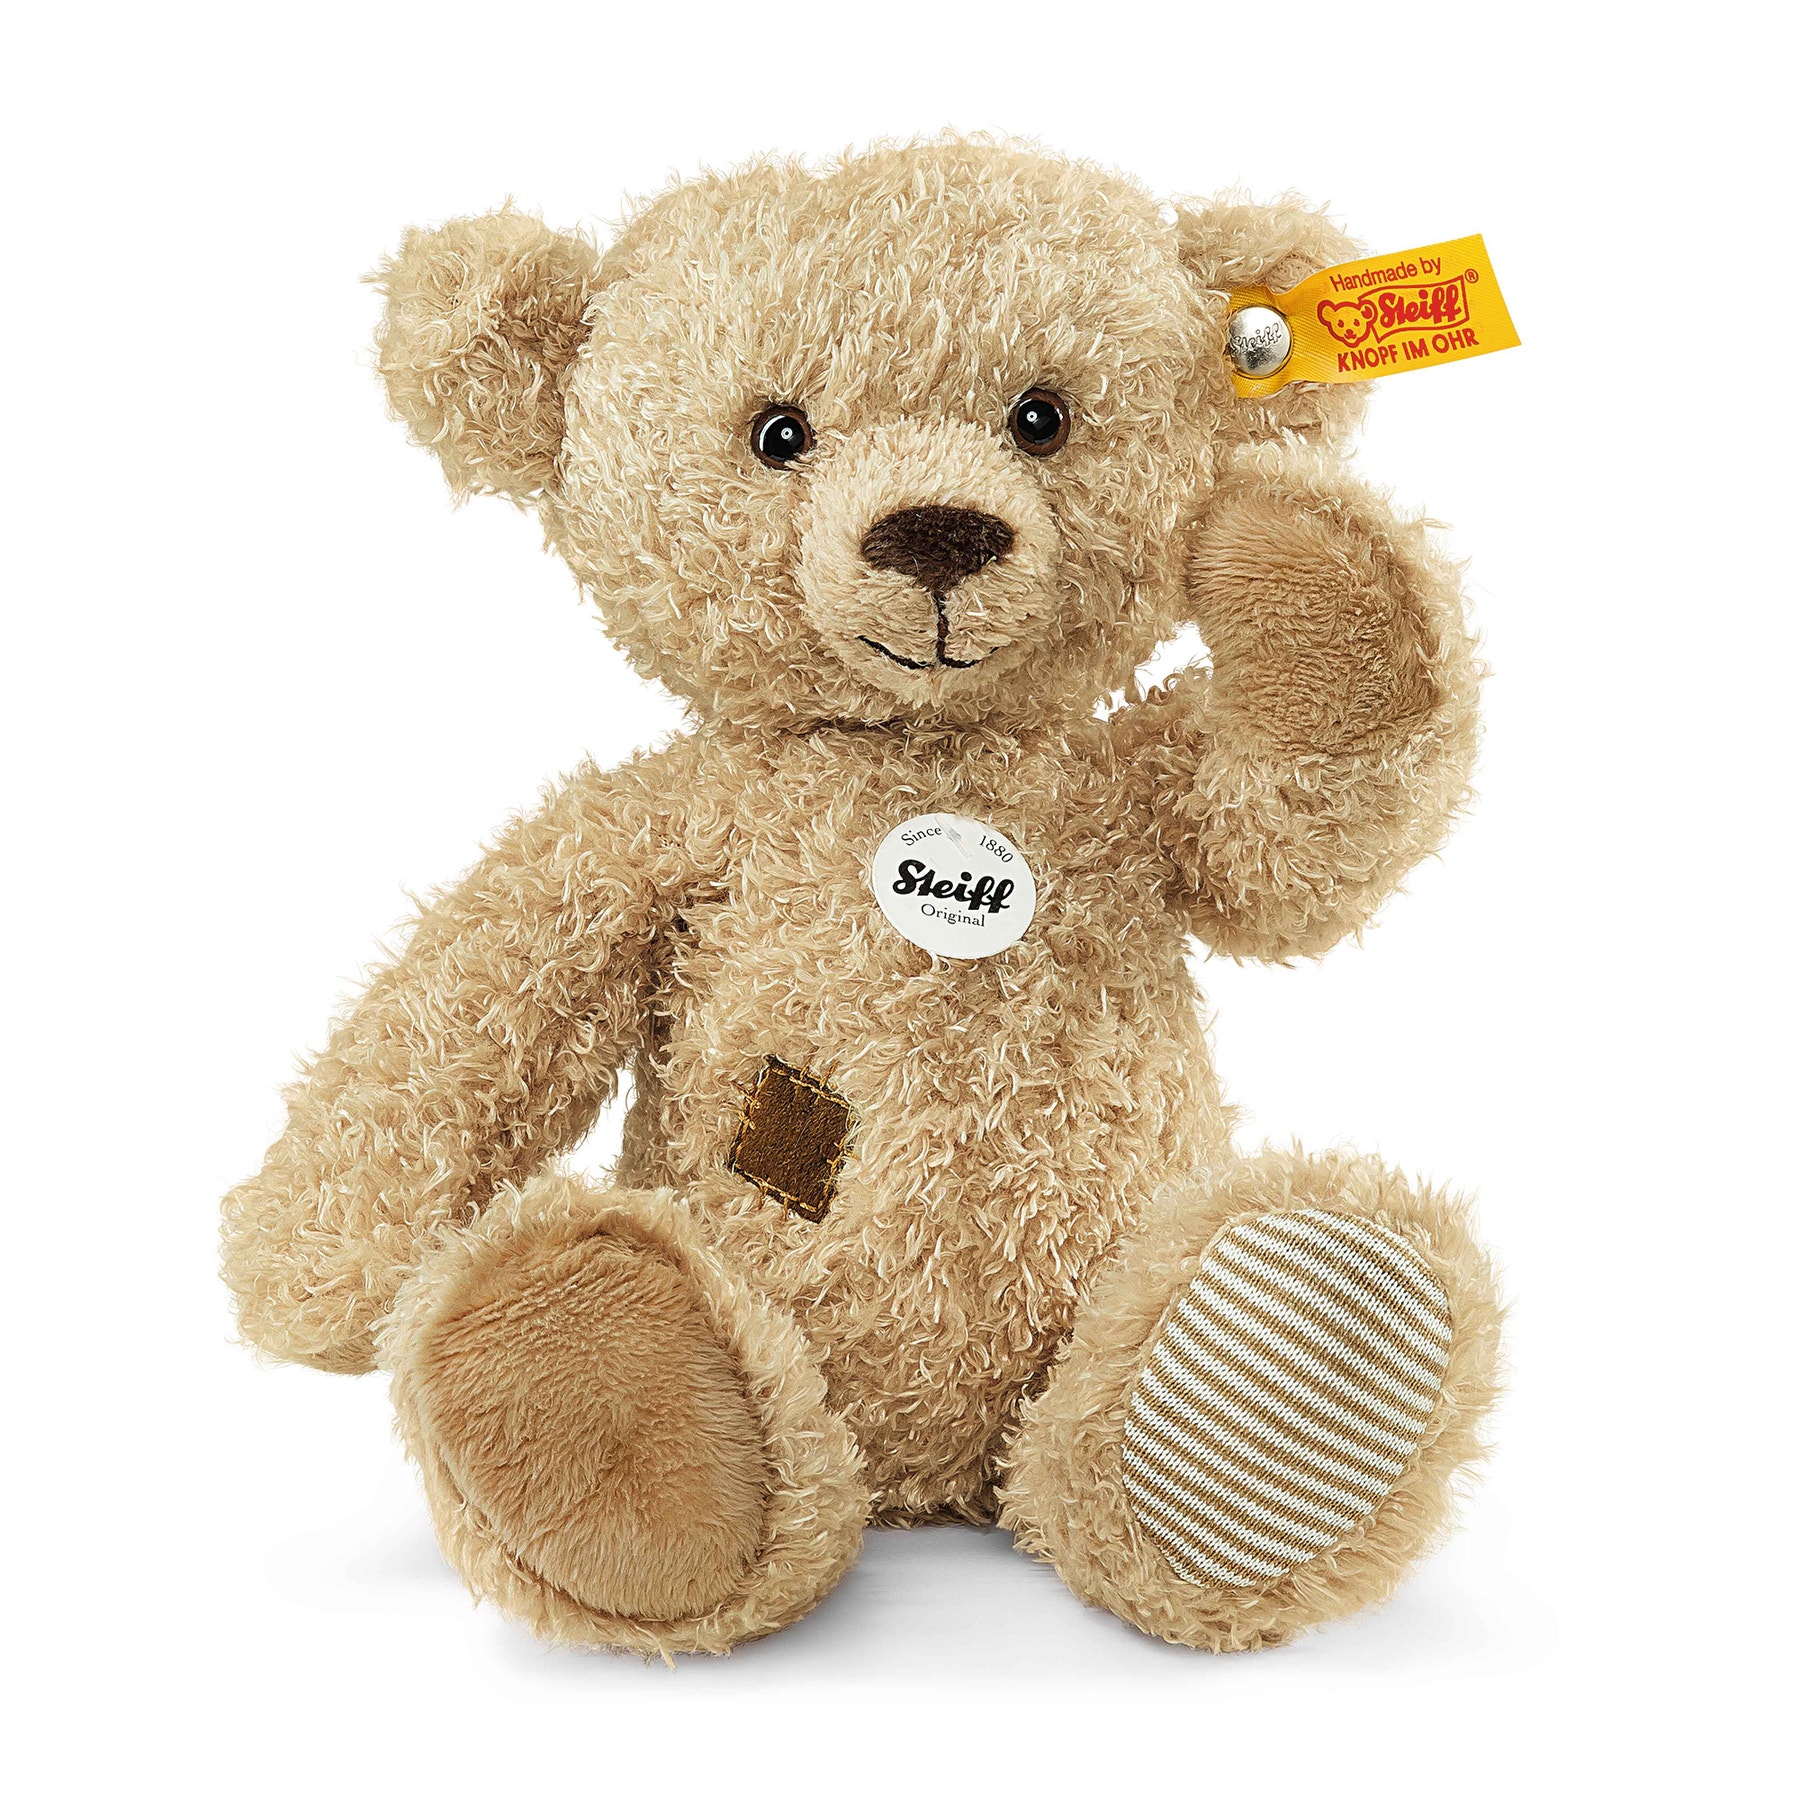 Theo Teddy bear